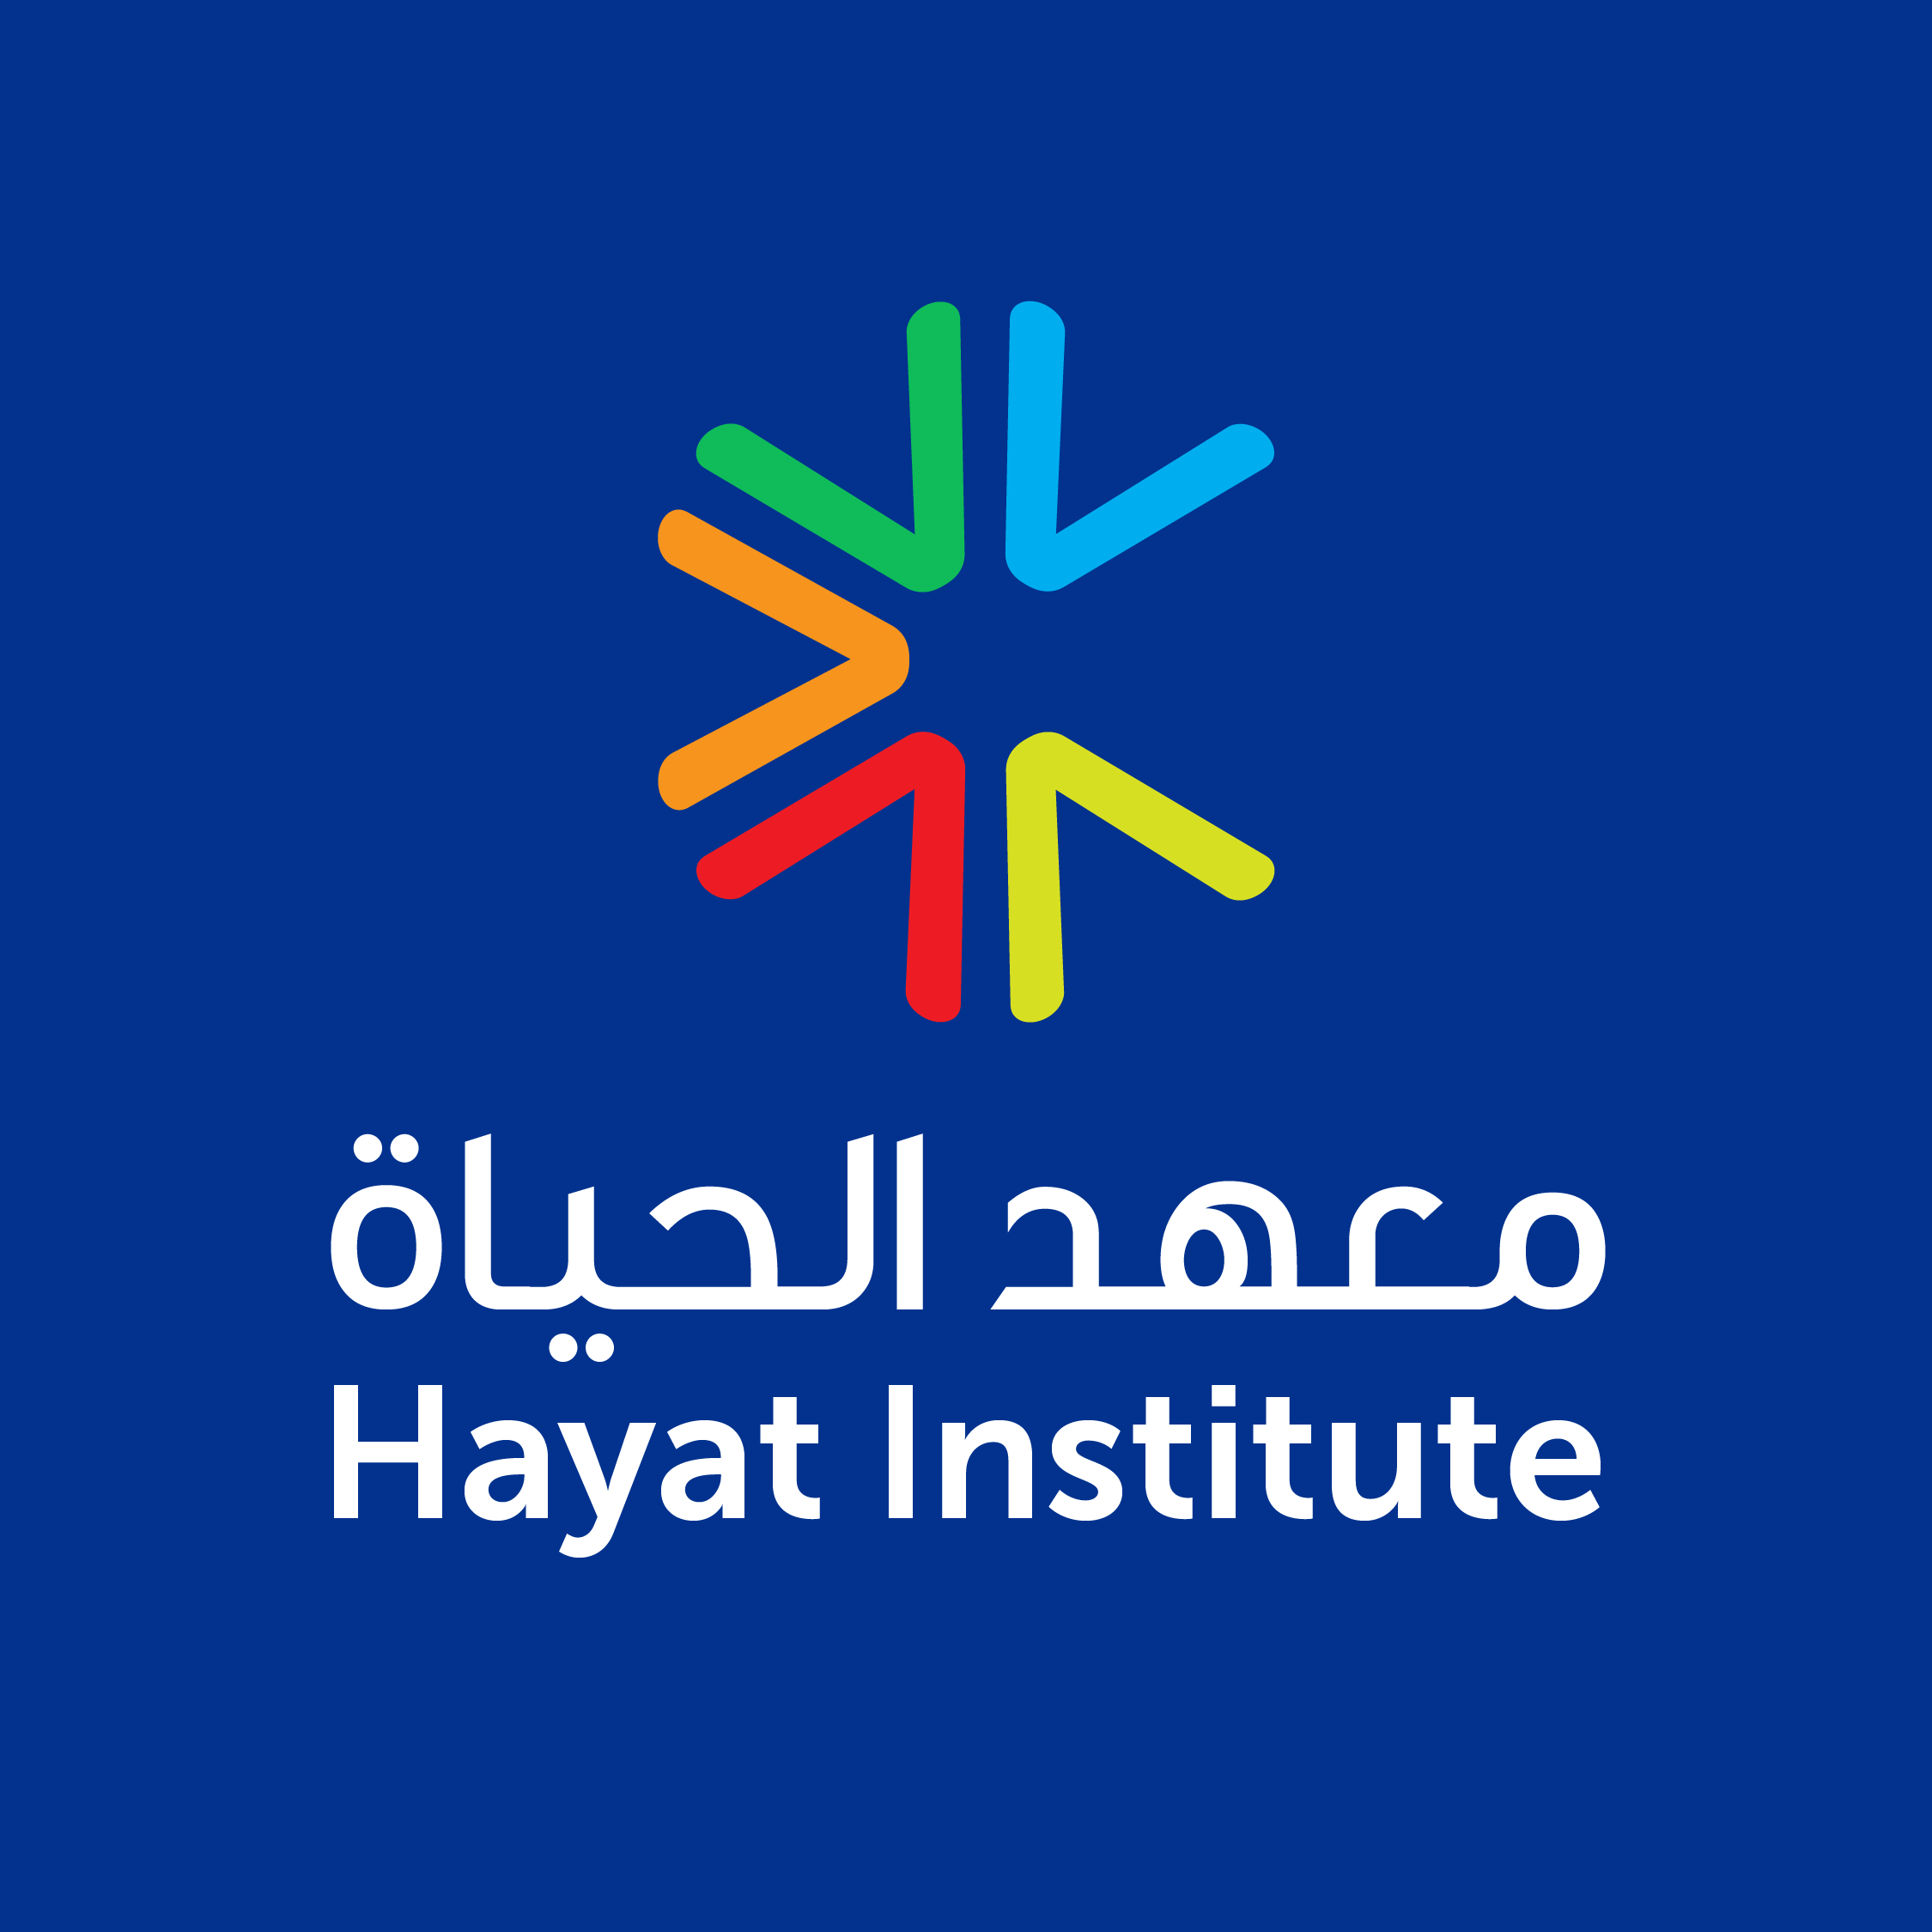 Hayat Institute Logo